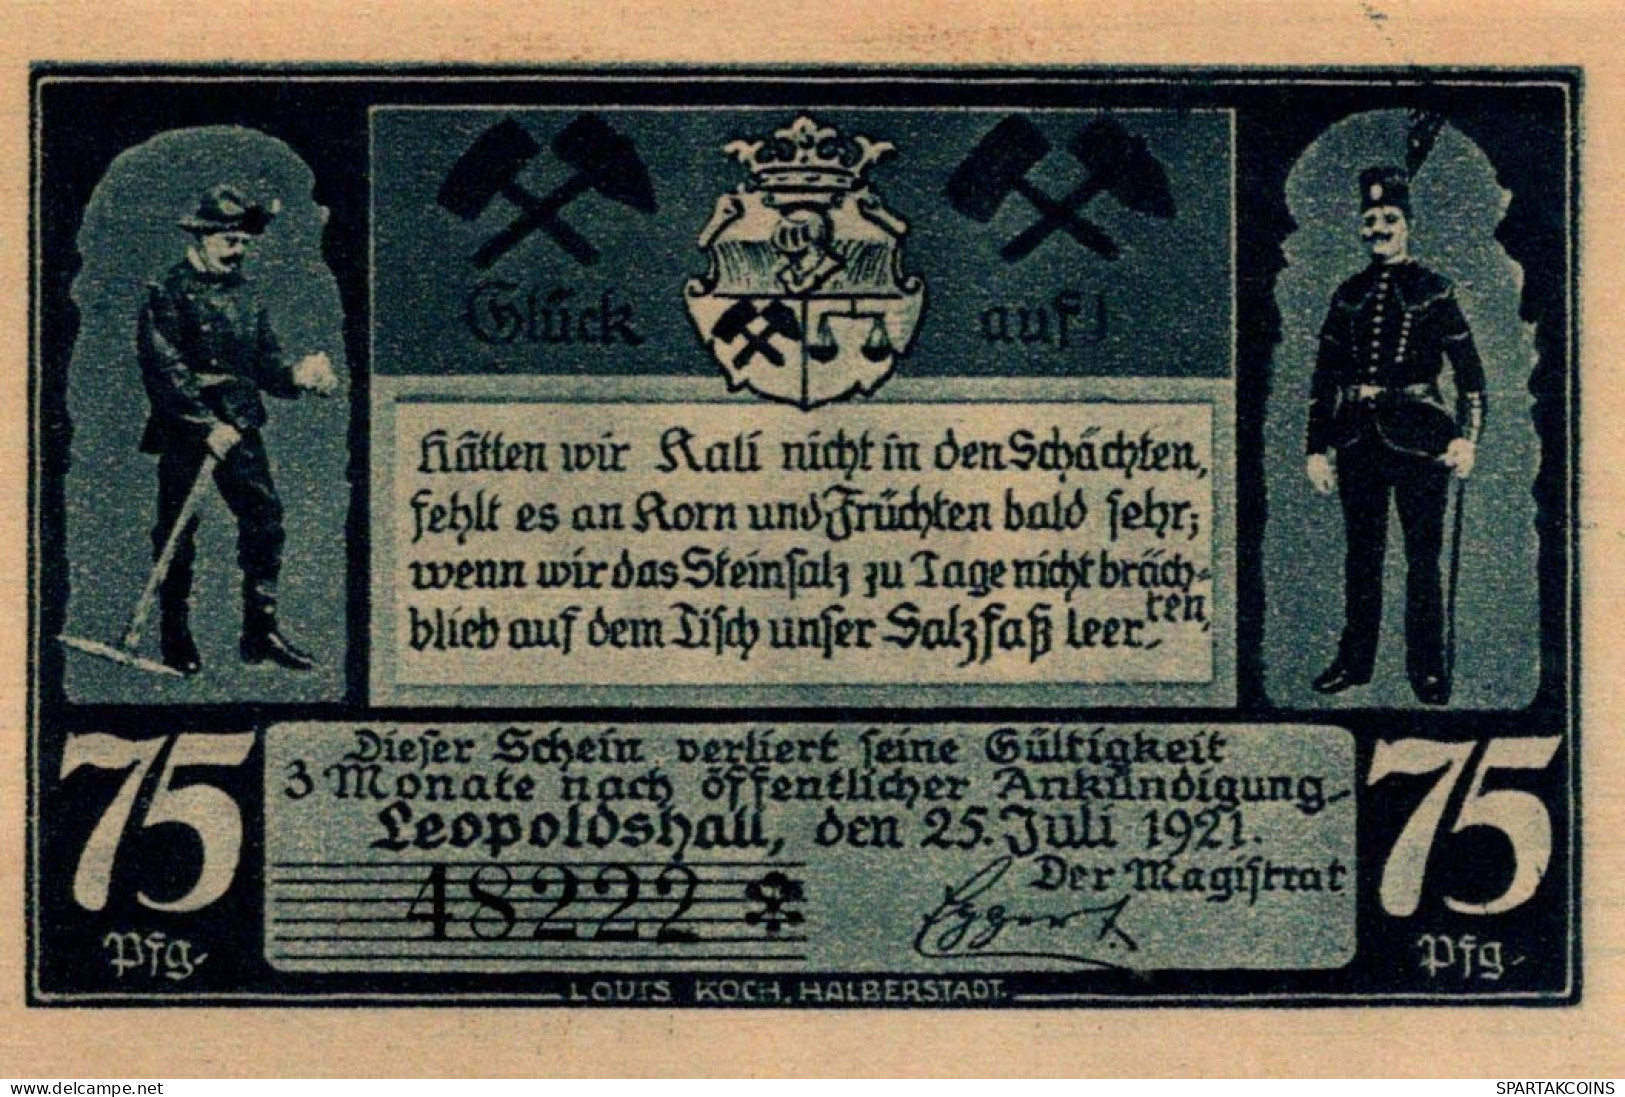 75 PFENNIG 1921 Stadt LEOPOLDSHALL Anhalt UNC DEUTSCHLAND Notgeld #PC164 - [11] Local Banknote Issues